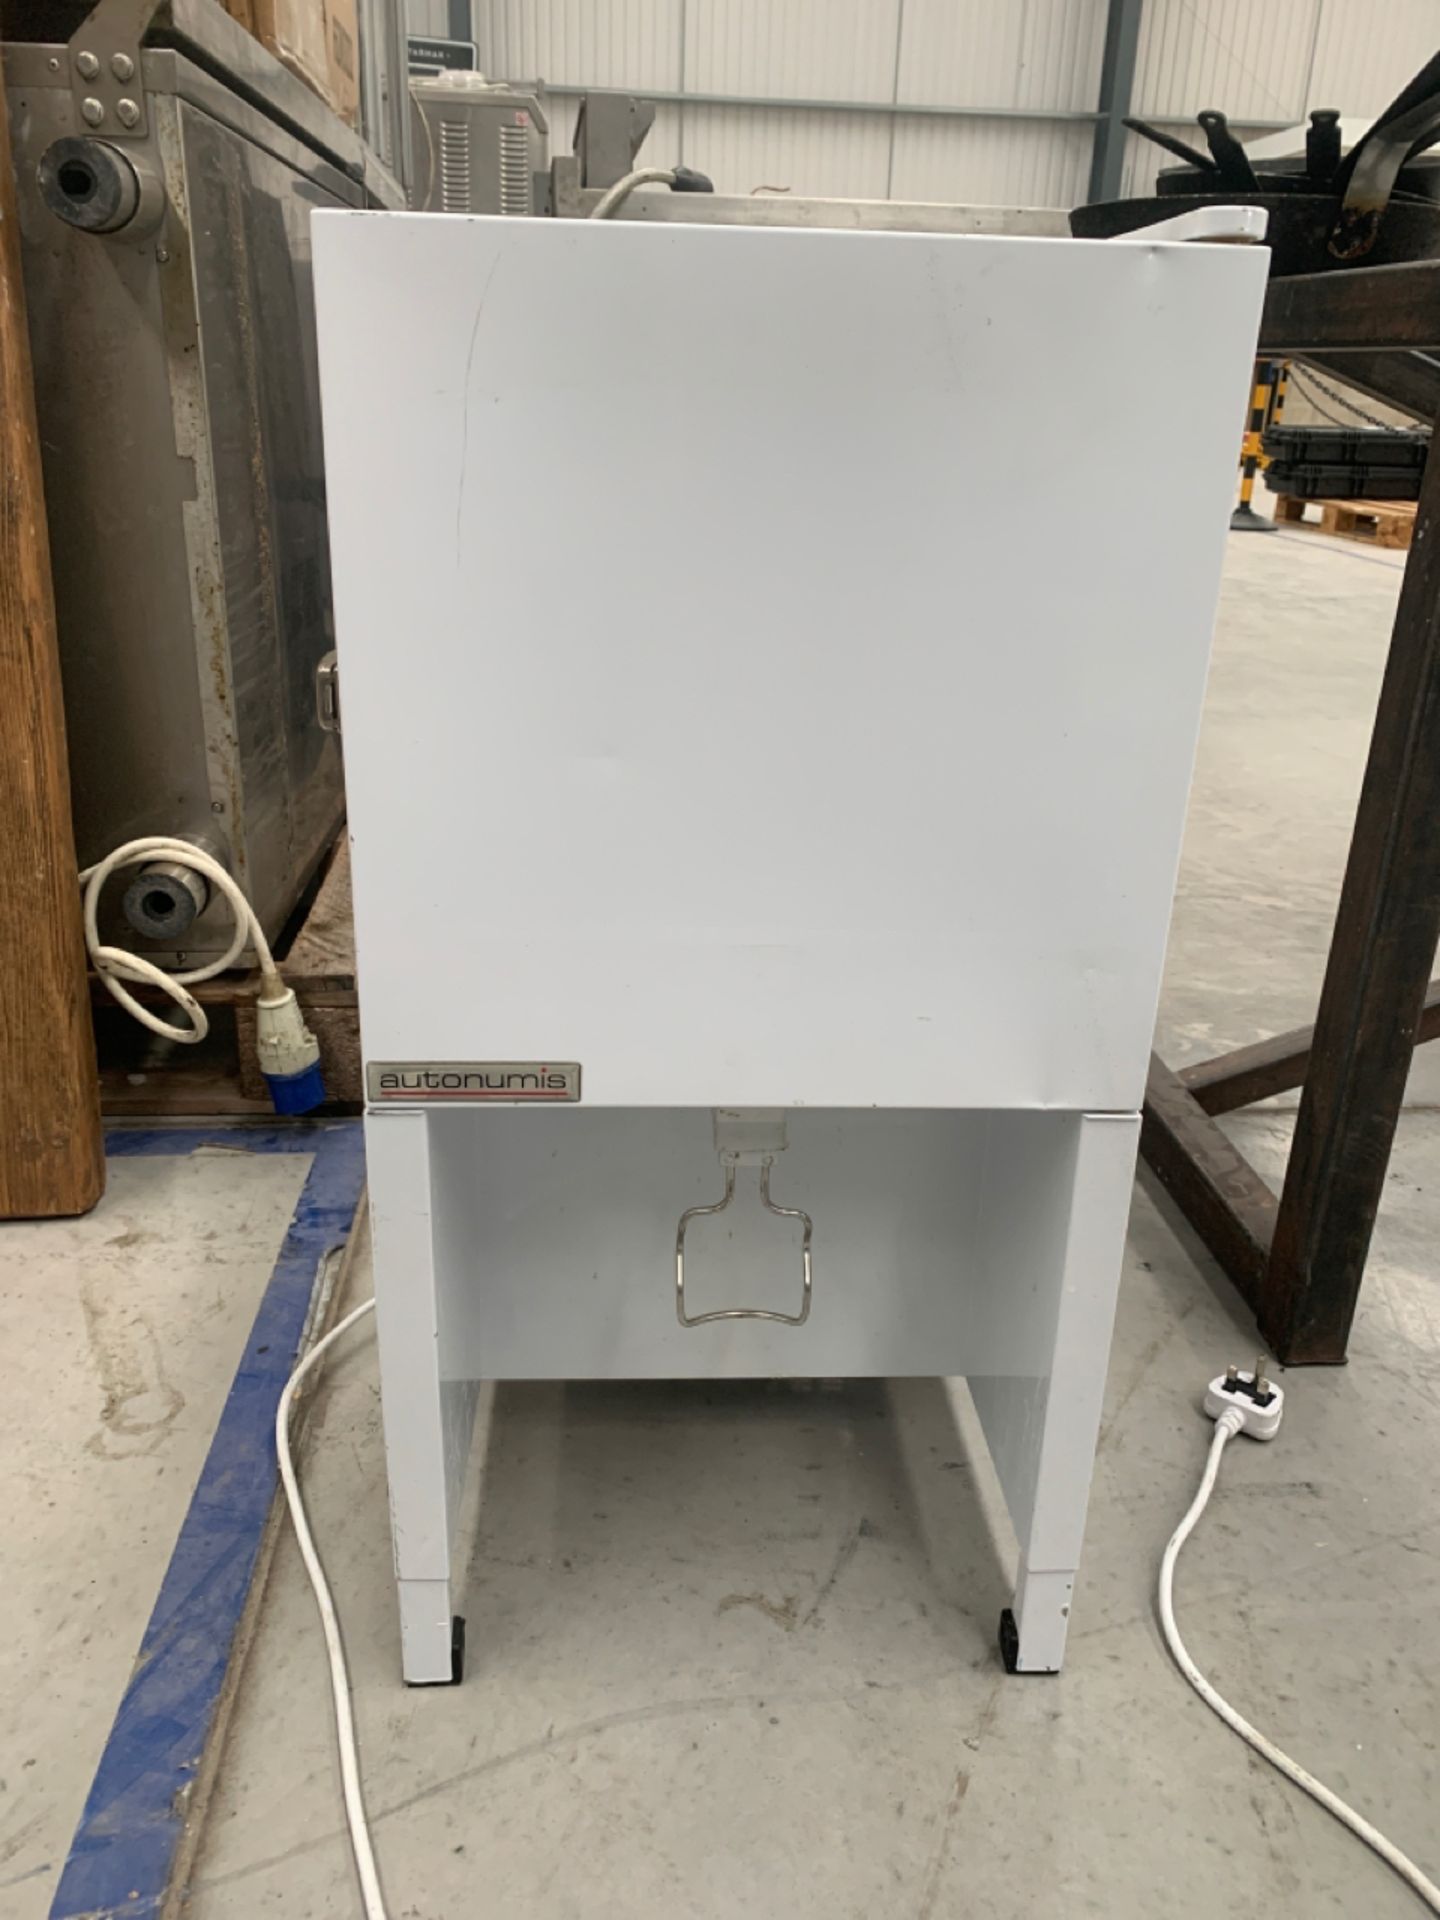 Autonumis Milk Dispenser - Image 2 of 4